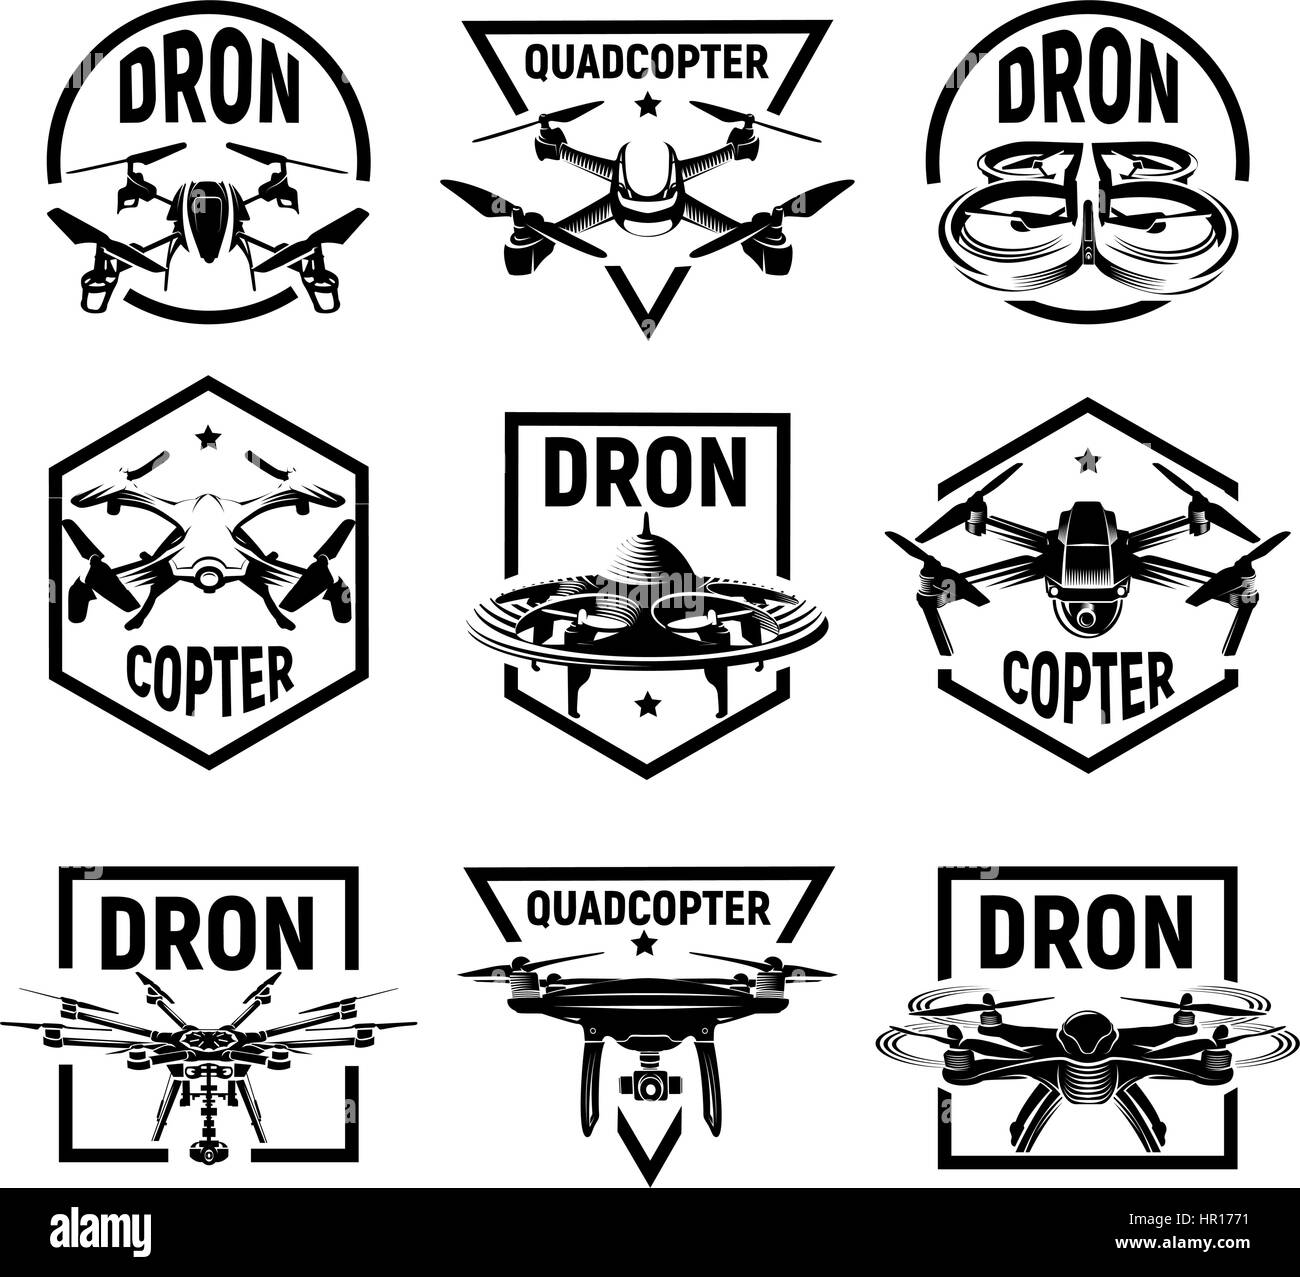 Isolato quadcopter monocromatico icone in frame, rc drone loghi raccolta, fpv logotipo dispositivo impostato illustrazione vettoriale. Illustrazione Vettoriale